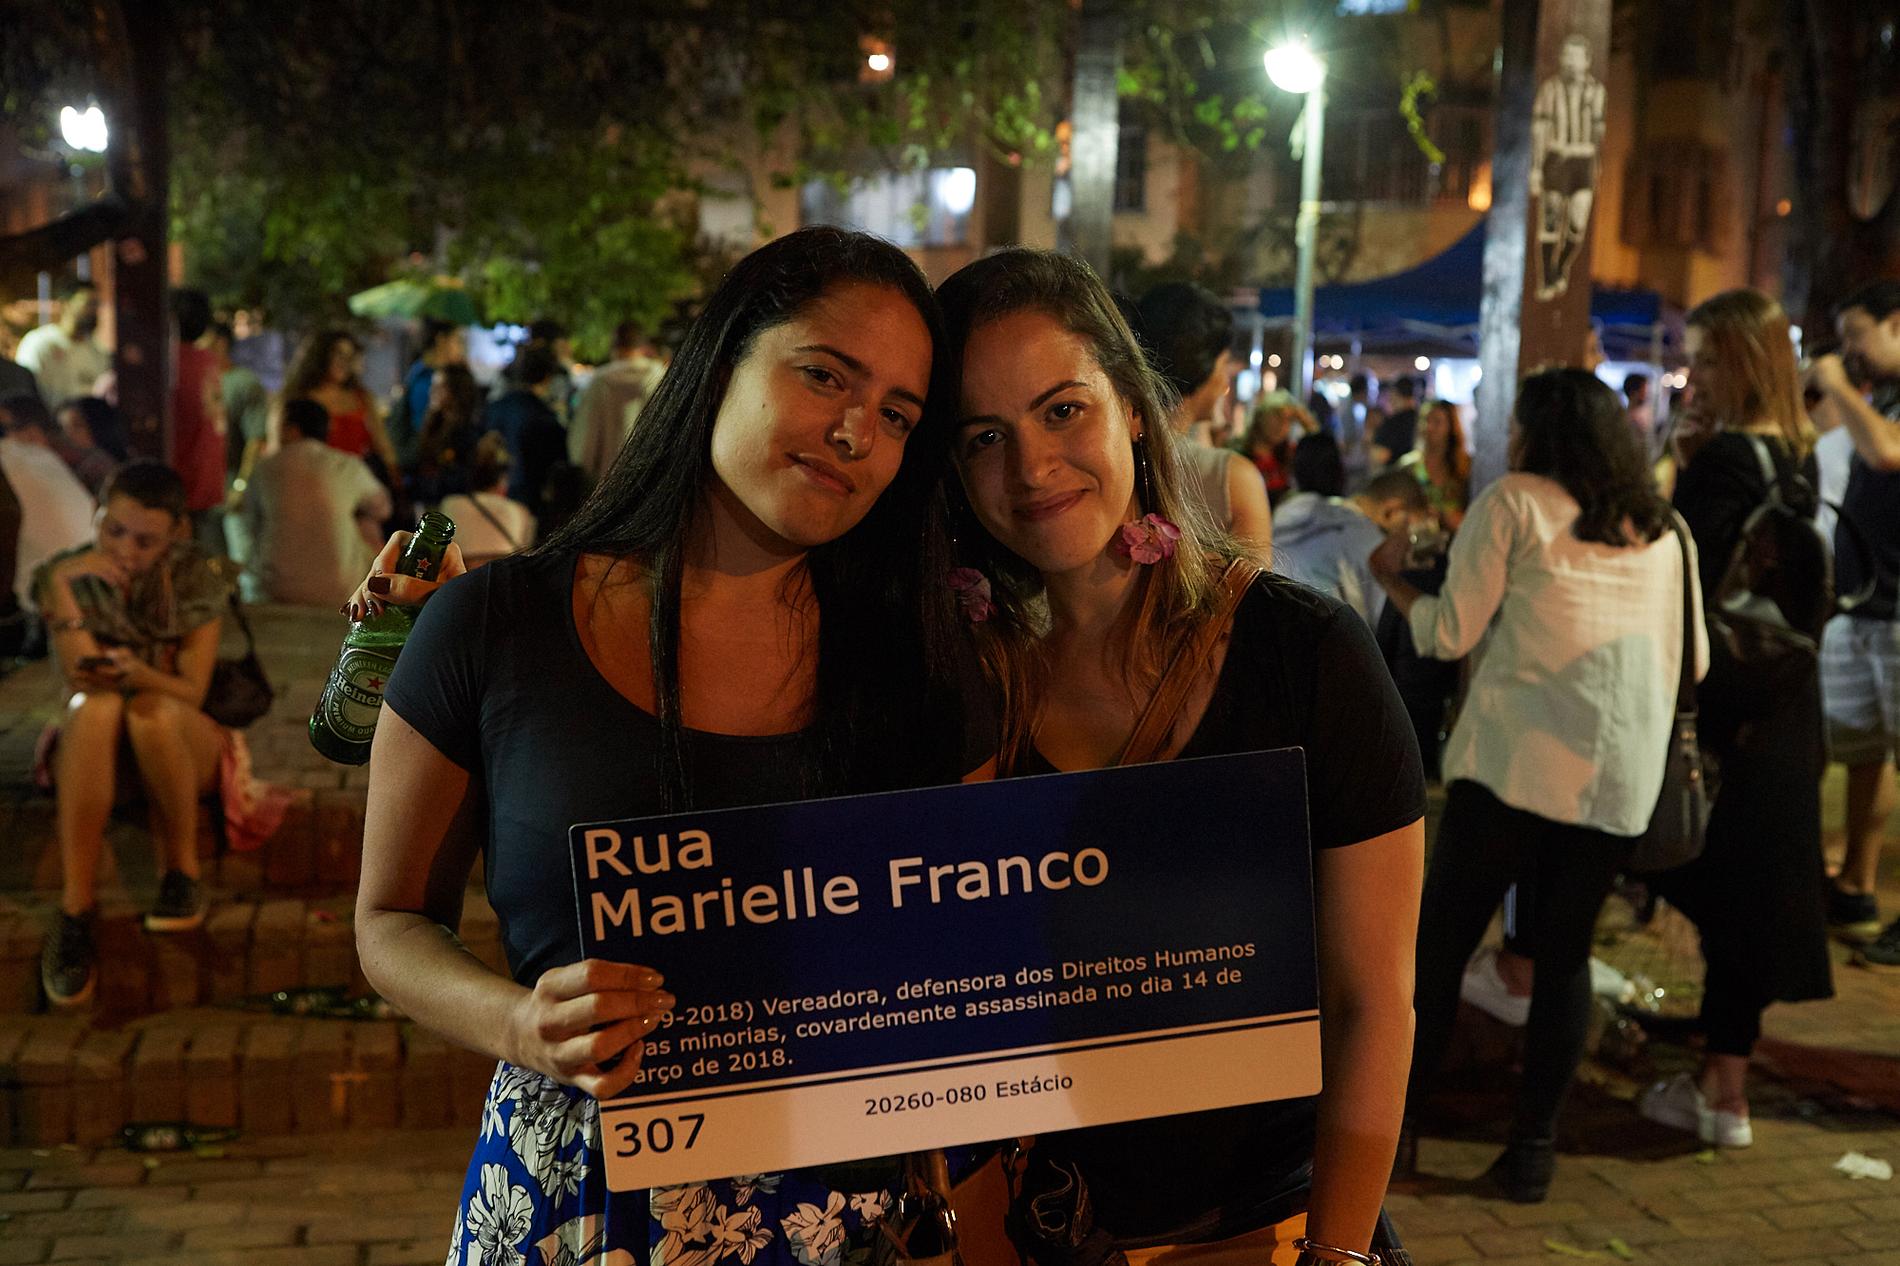 Mariana Souto, 31 (till vänster) och Elaine Martins, 33, håller upp en skylt med den i år mördade vänsteraktivisten och politikern Marielle Francos namn på.